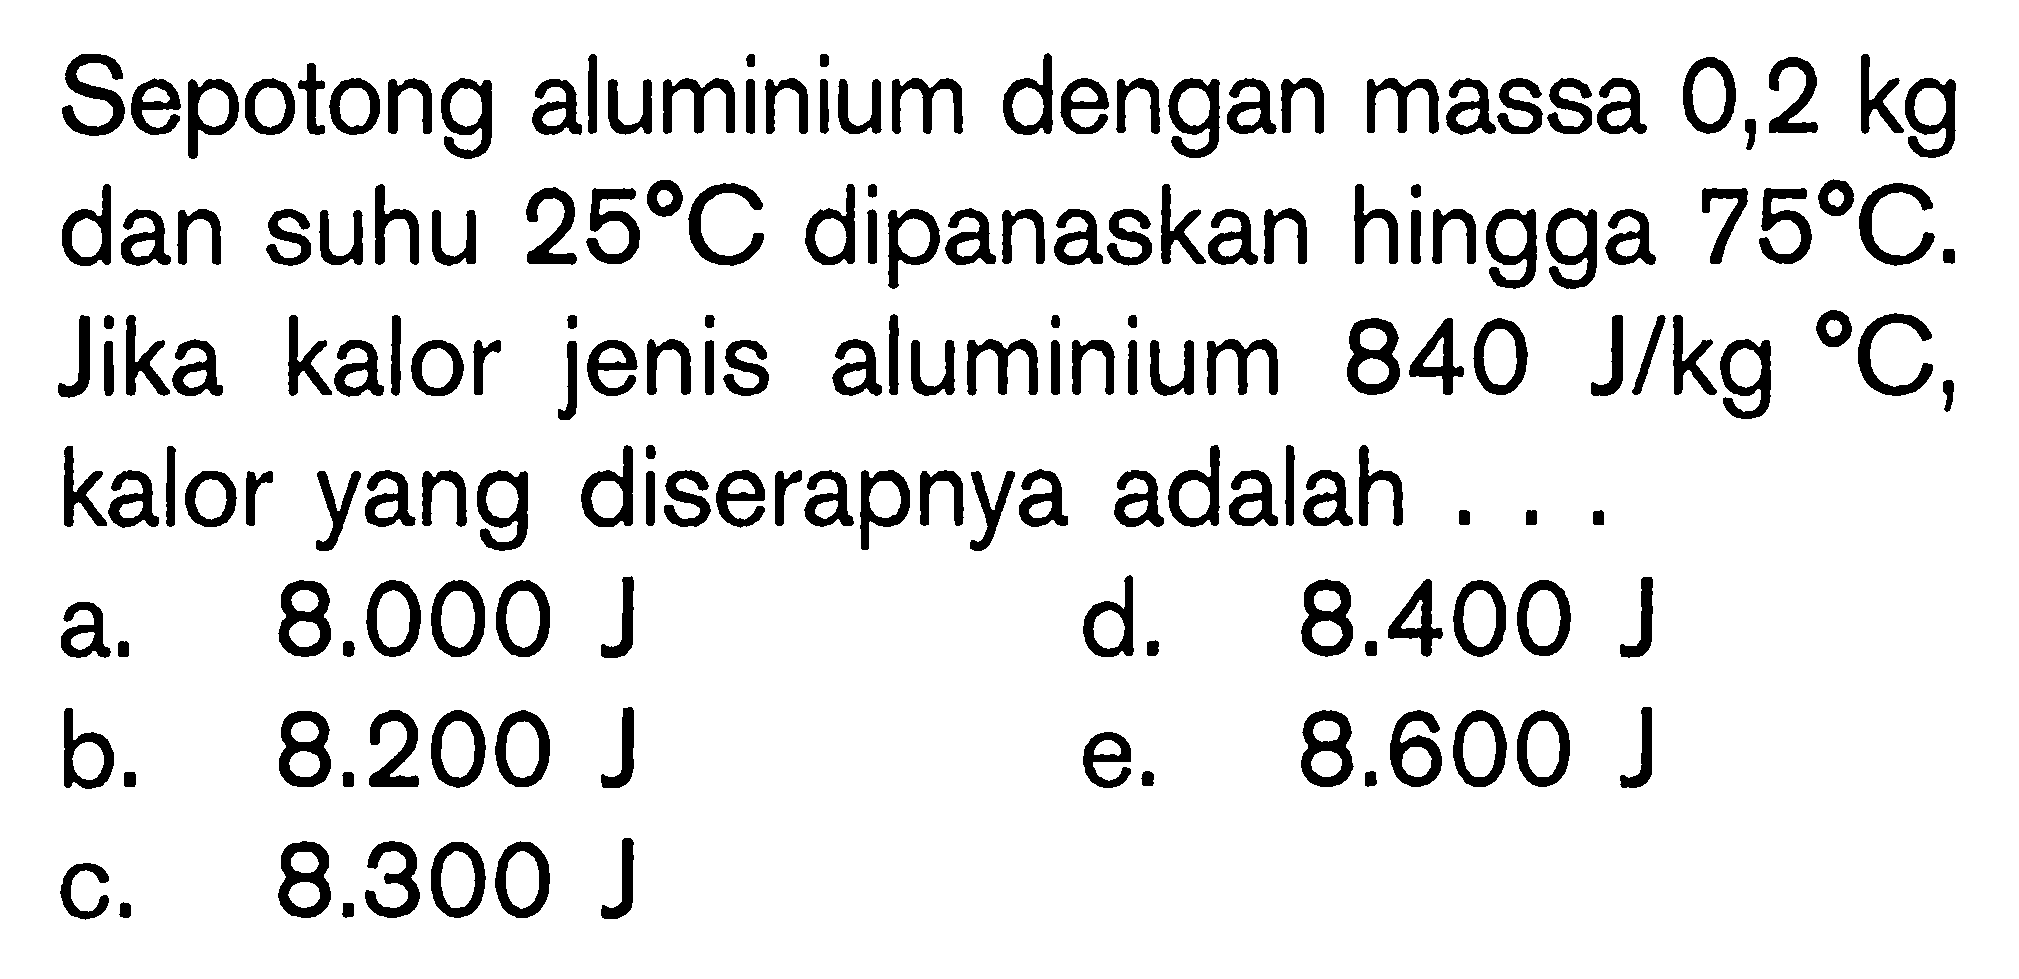 Sepotong aluminium dengan massa 0,2 kg dan suhu 25 C dipanaskan hingga 75 C. Jika kalor jenis aluminium 840 J/kg C, kalor yang diserapnya adalah ...